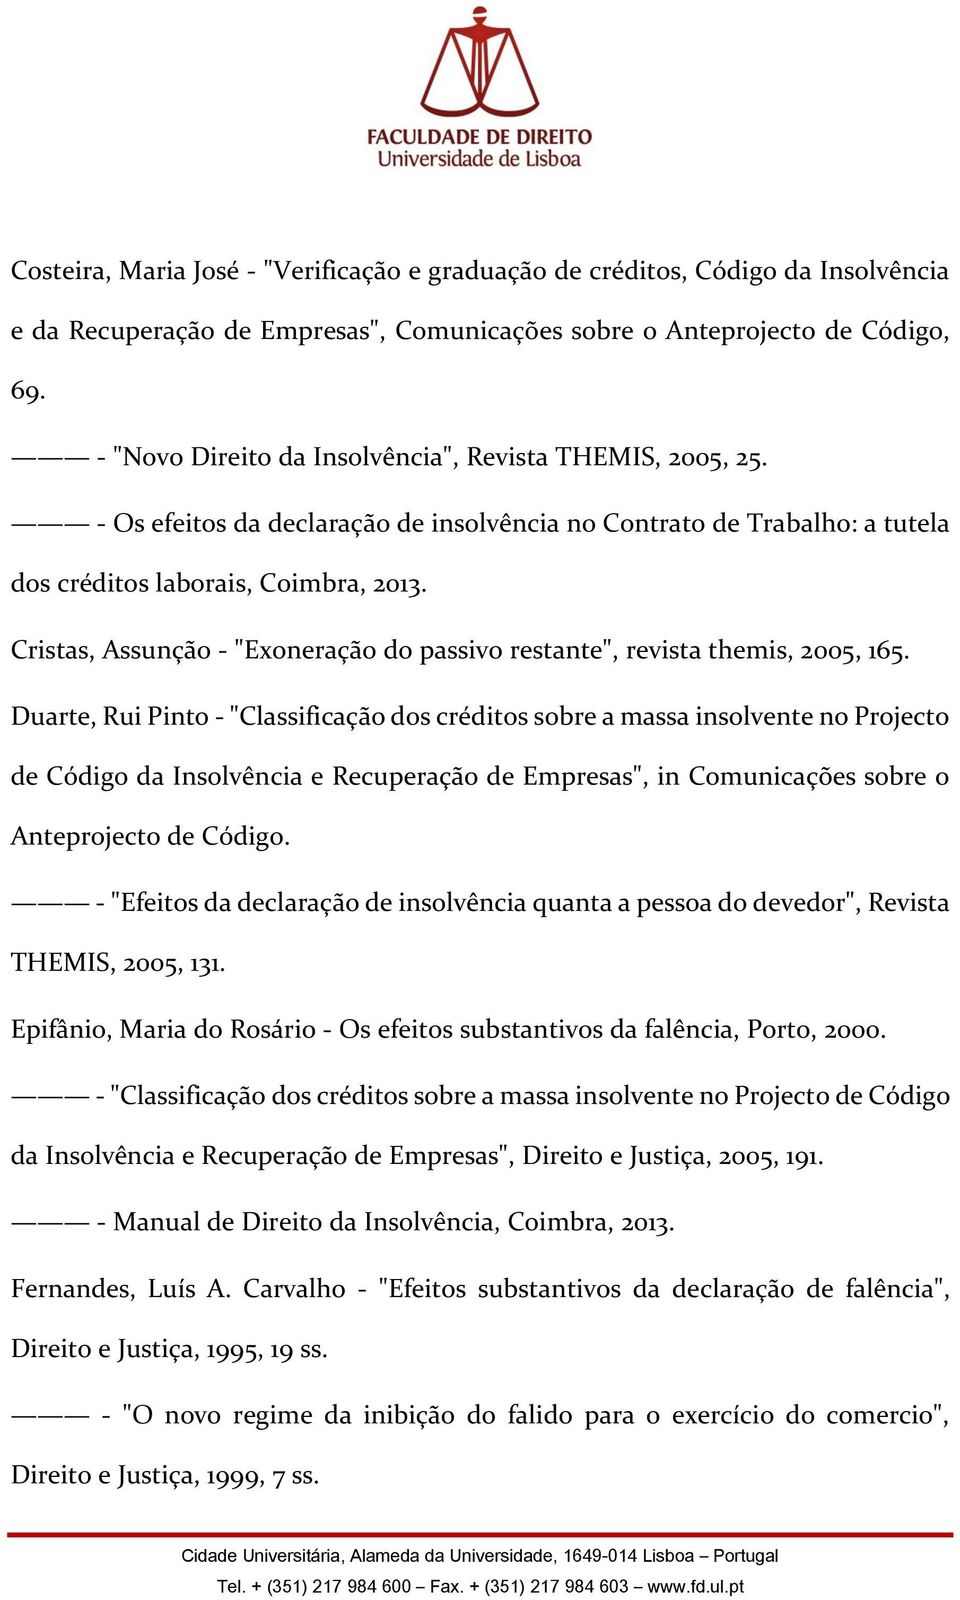 Cristas, Assunção - "Exoneração do passivo restante", revista themis, 2005, 165.